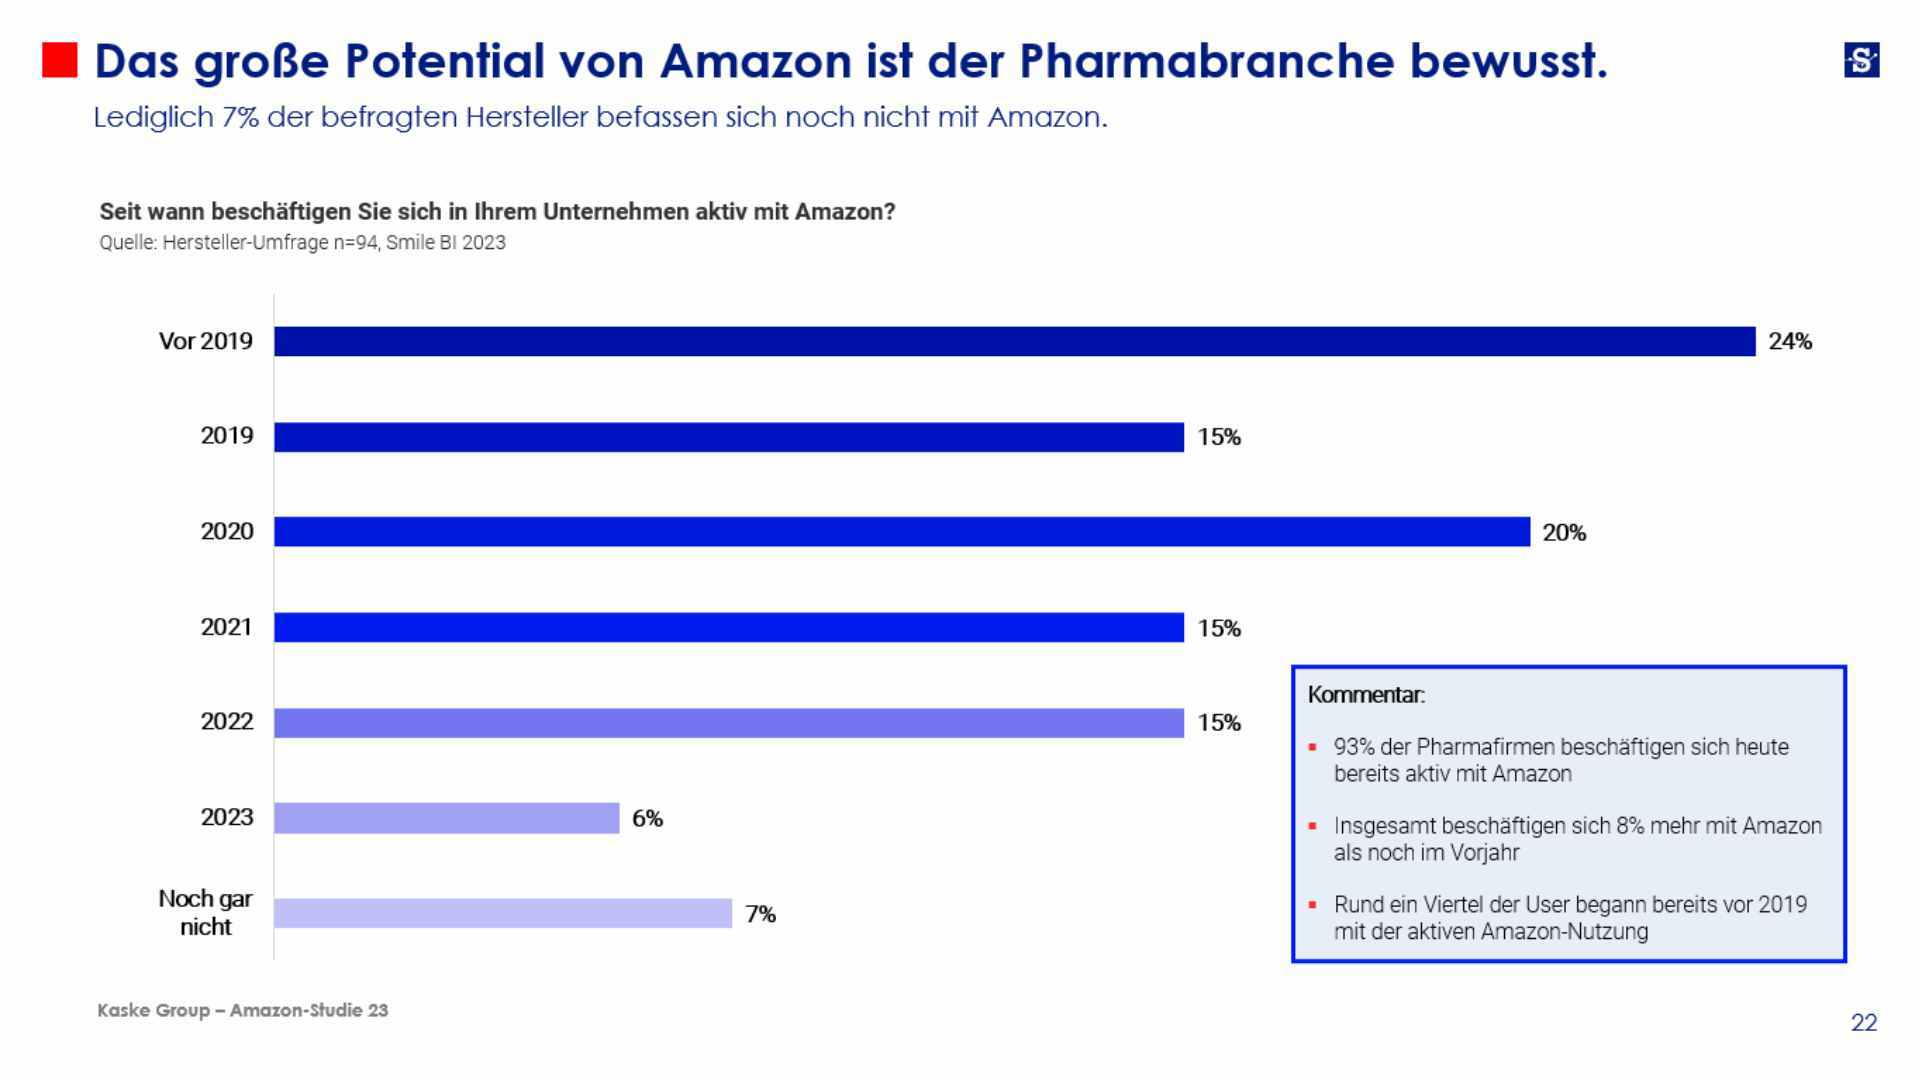 Das große Potential von Amazon ist der Pharmabranche bewusst